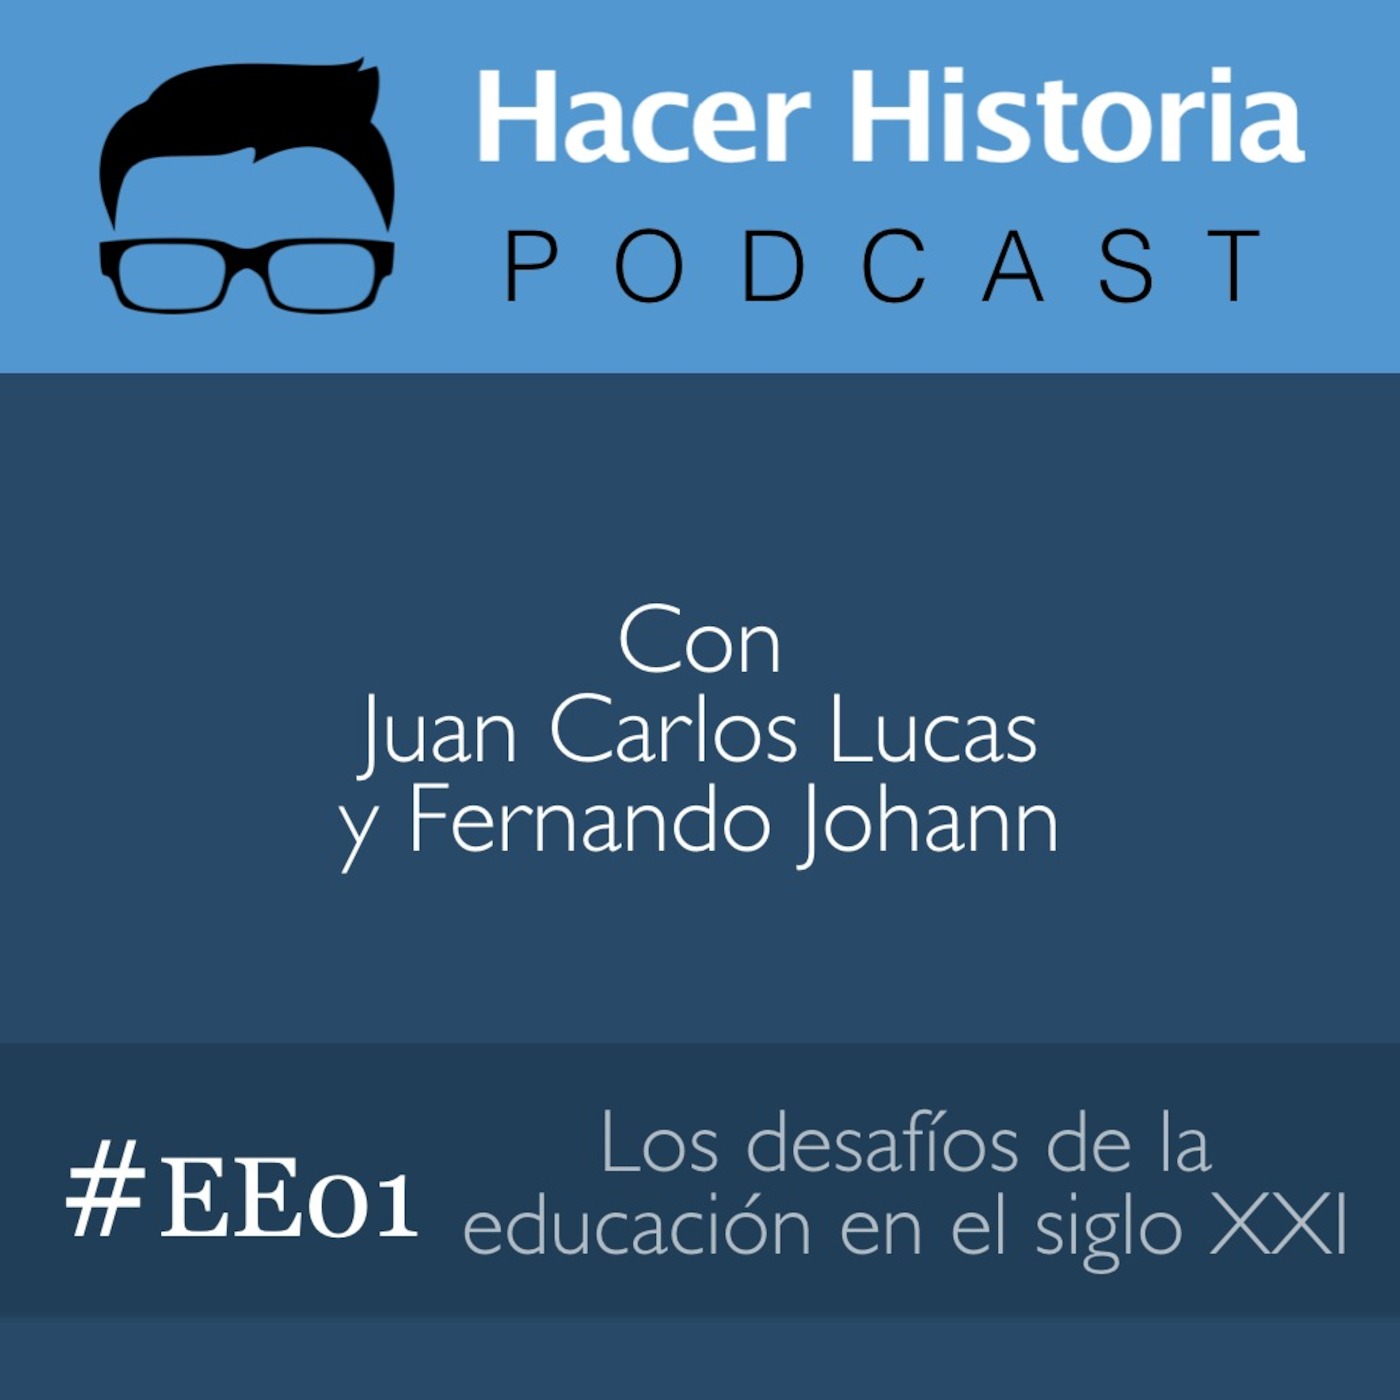 Episodio Especial 01: Los desafíos de la educación en el siglo XXI - Invitado: Jose Luis del Prado